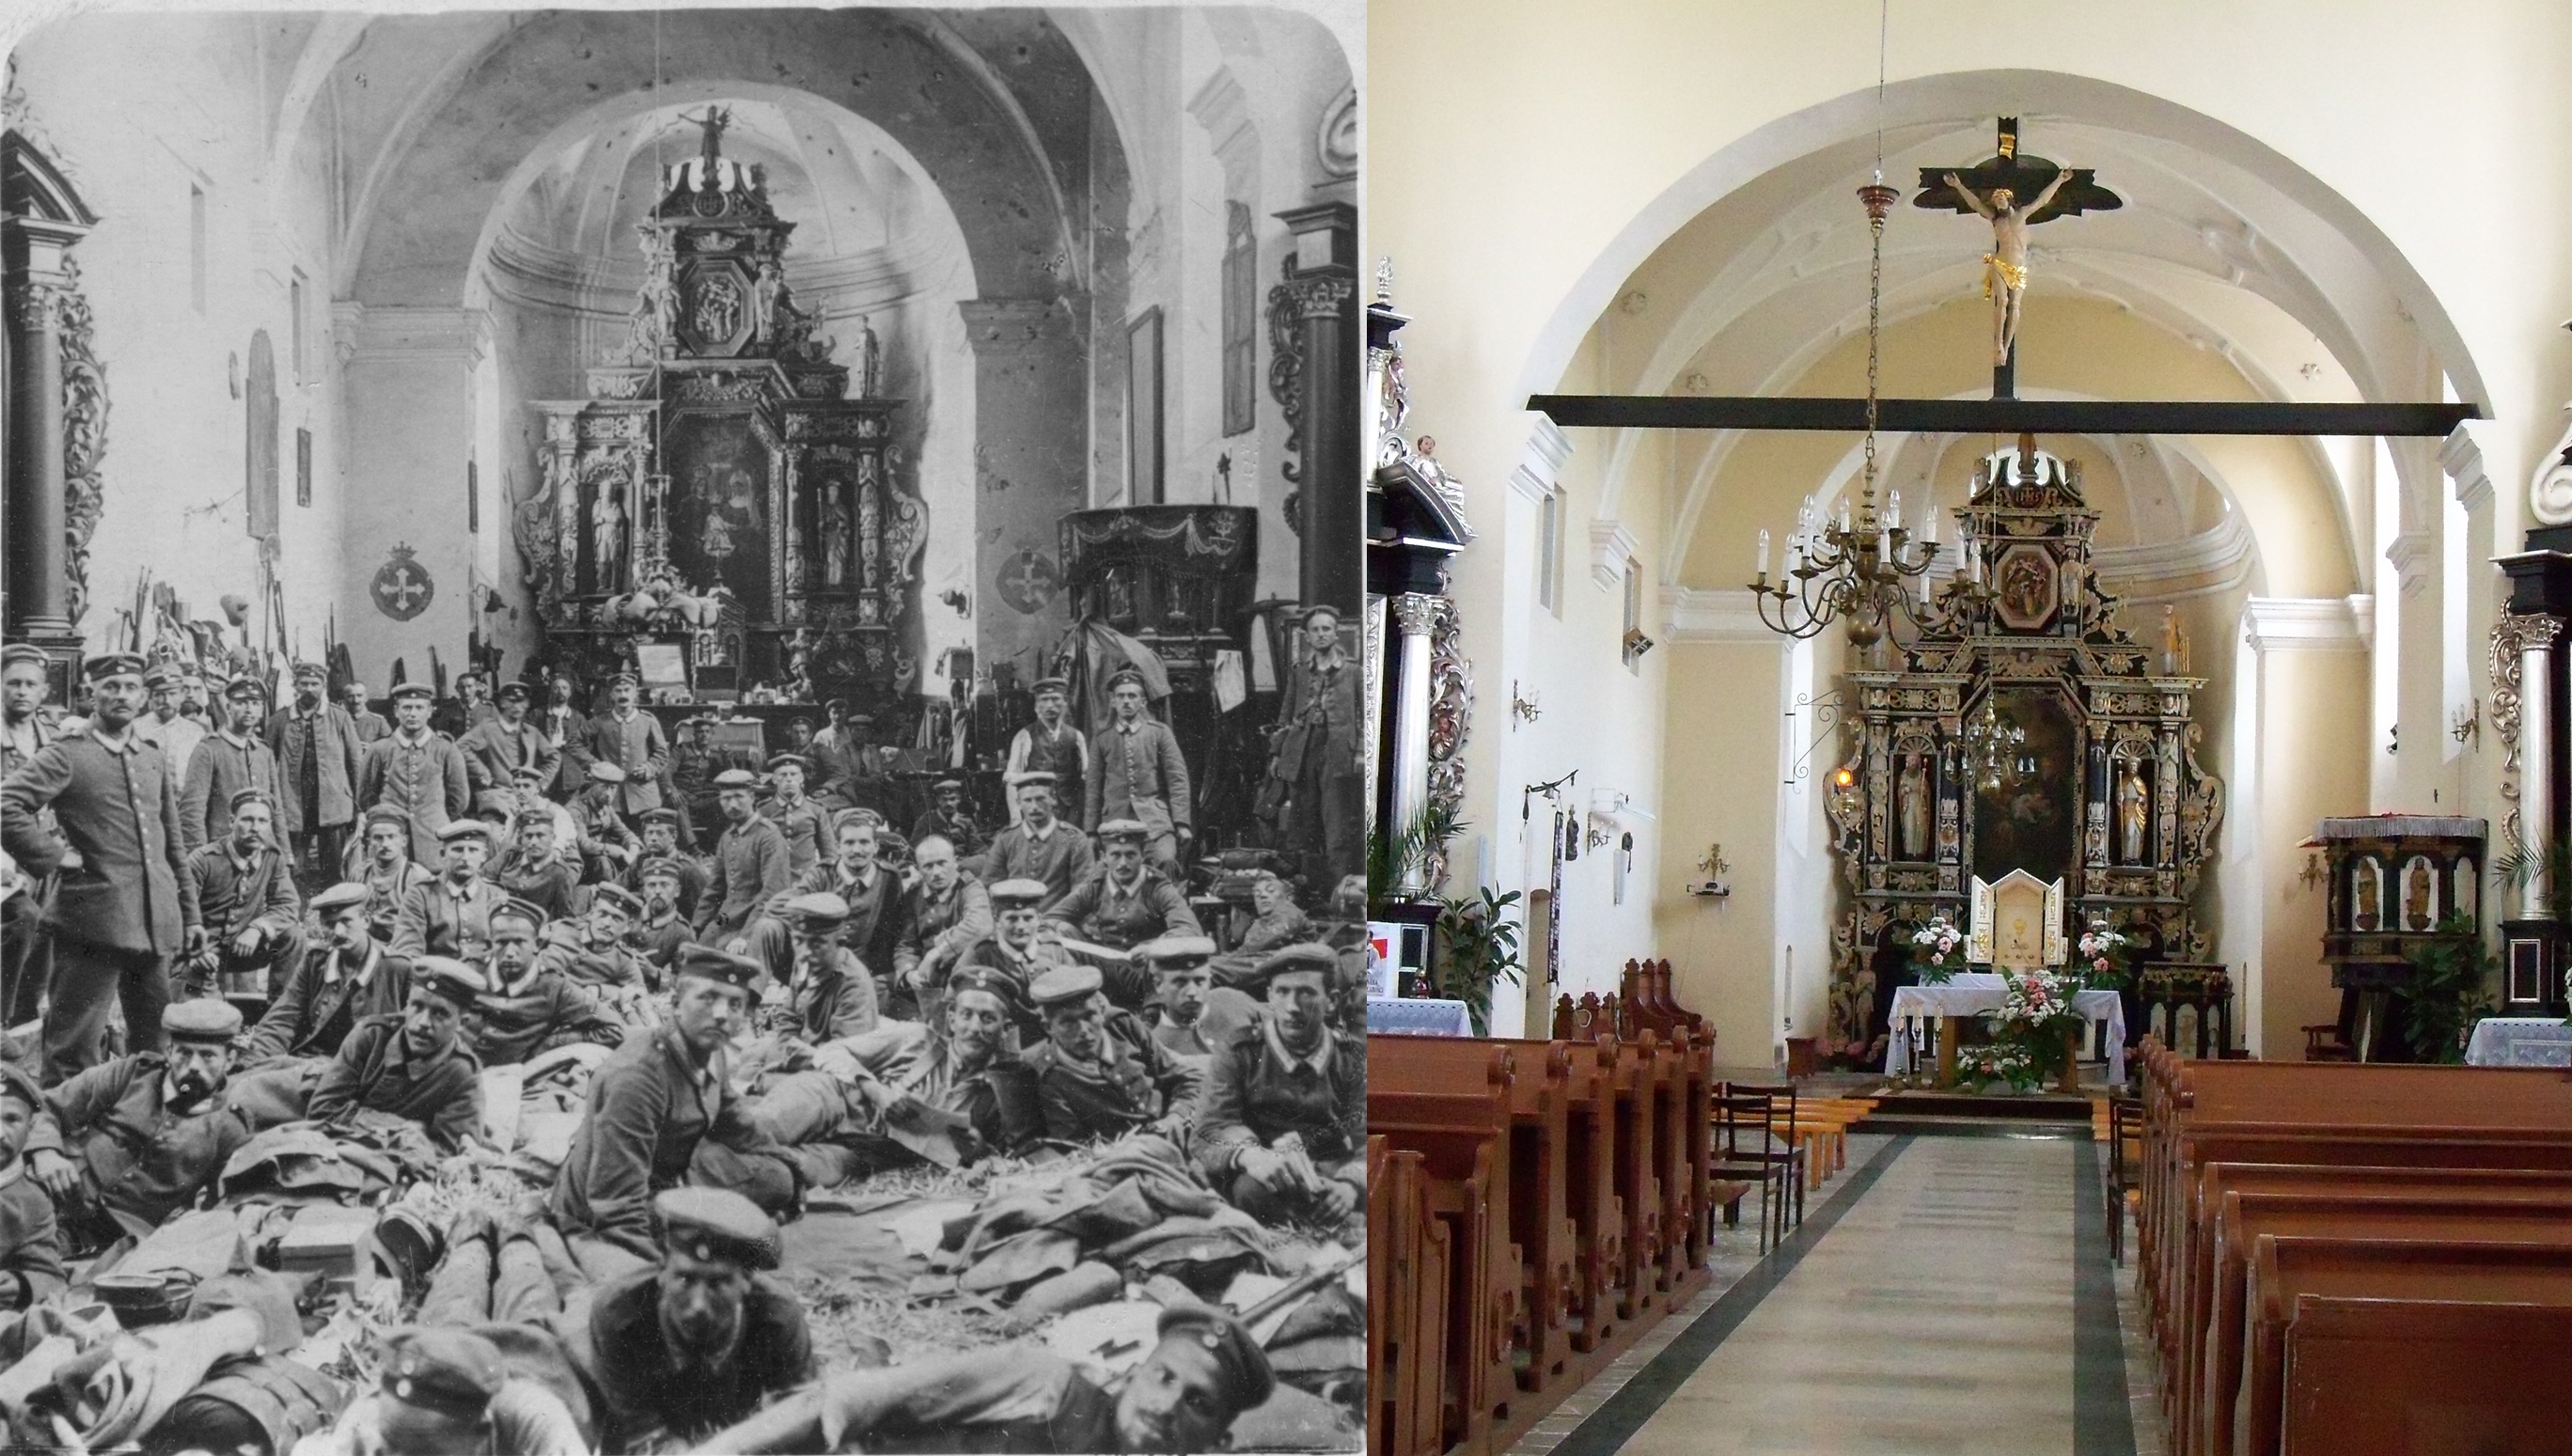 Kościół Św. Anny  w Bolimowie (zdjęcia z wnętrza kościoła: wykonane w trakcie Pierwszej Wojny Światowej i wspłółcześnie)